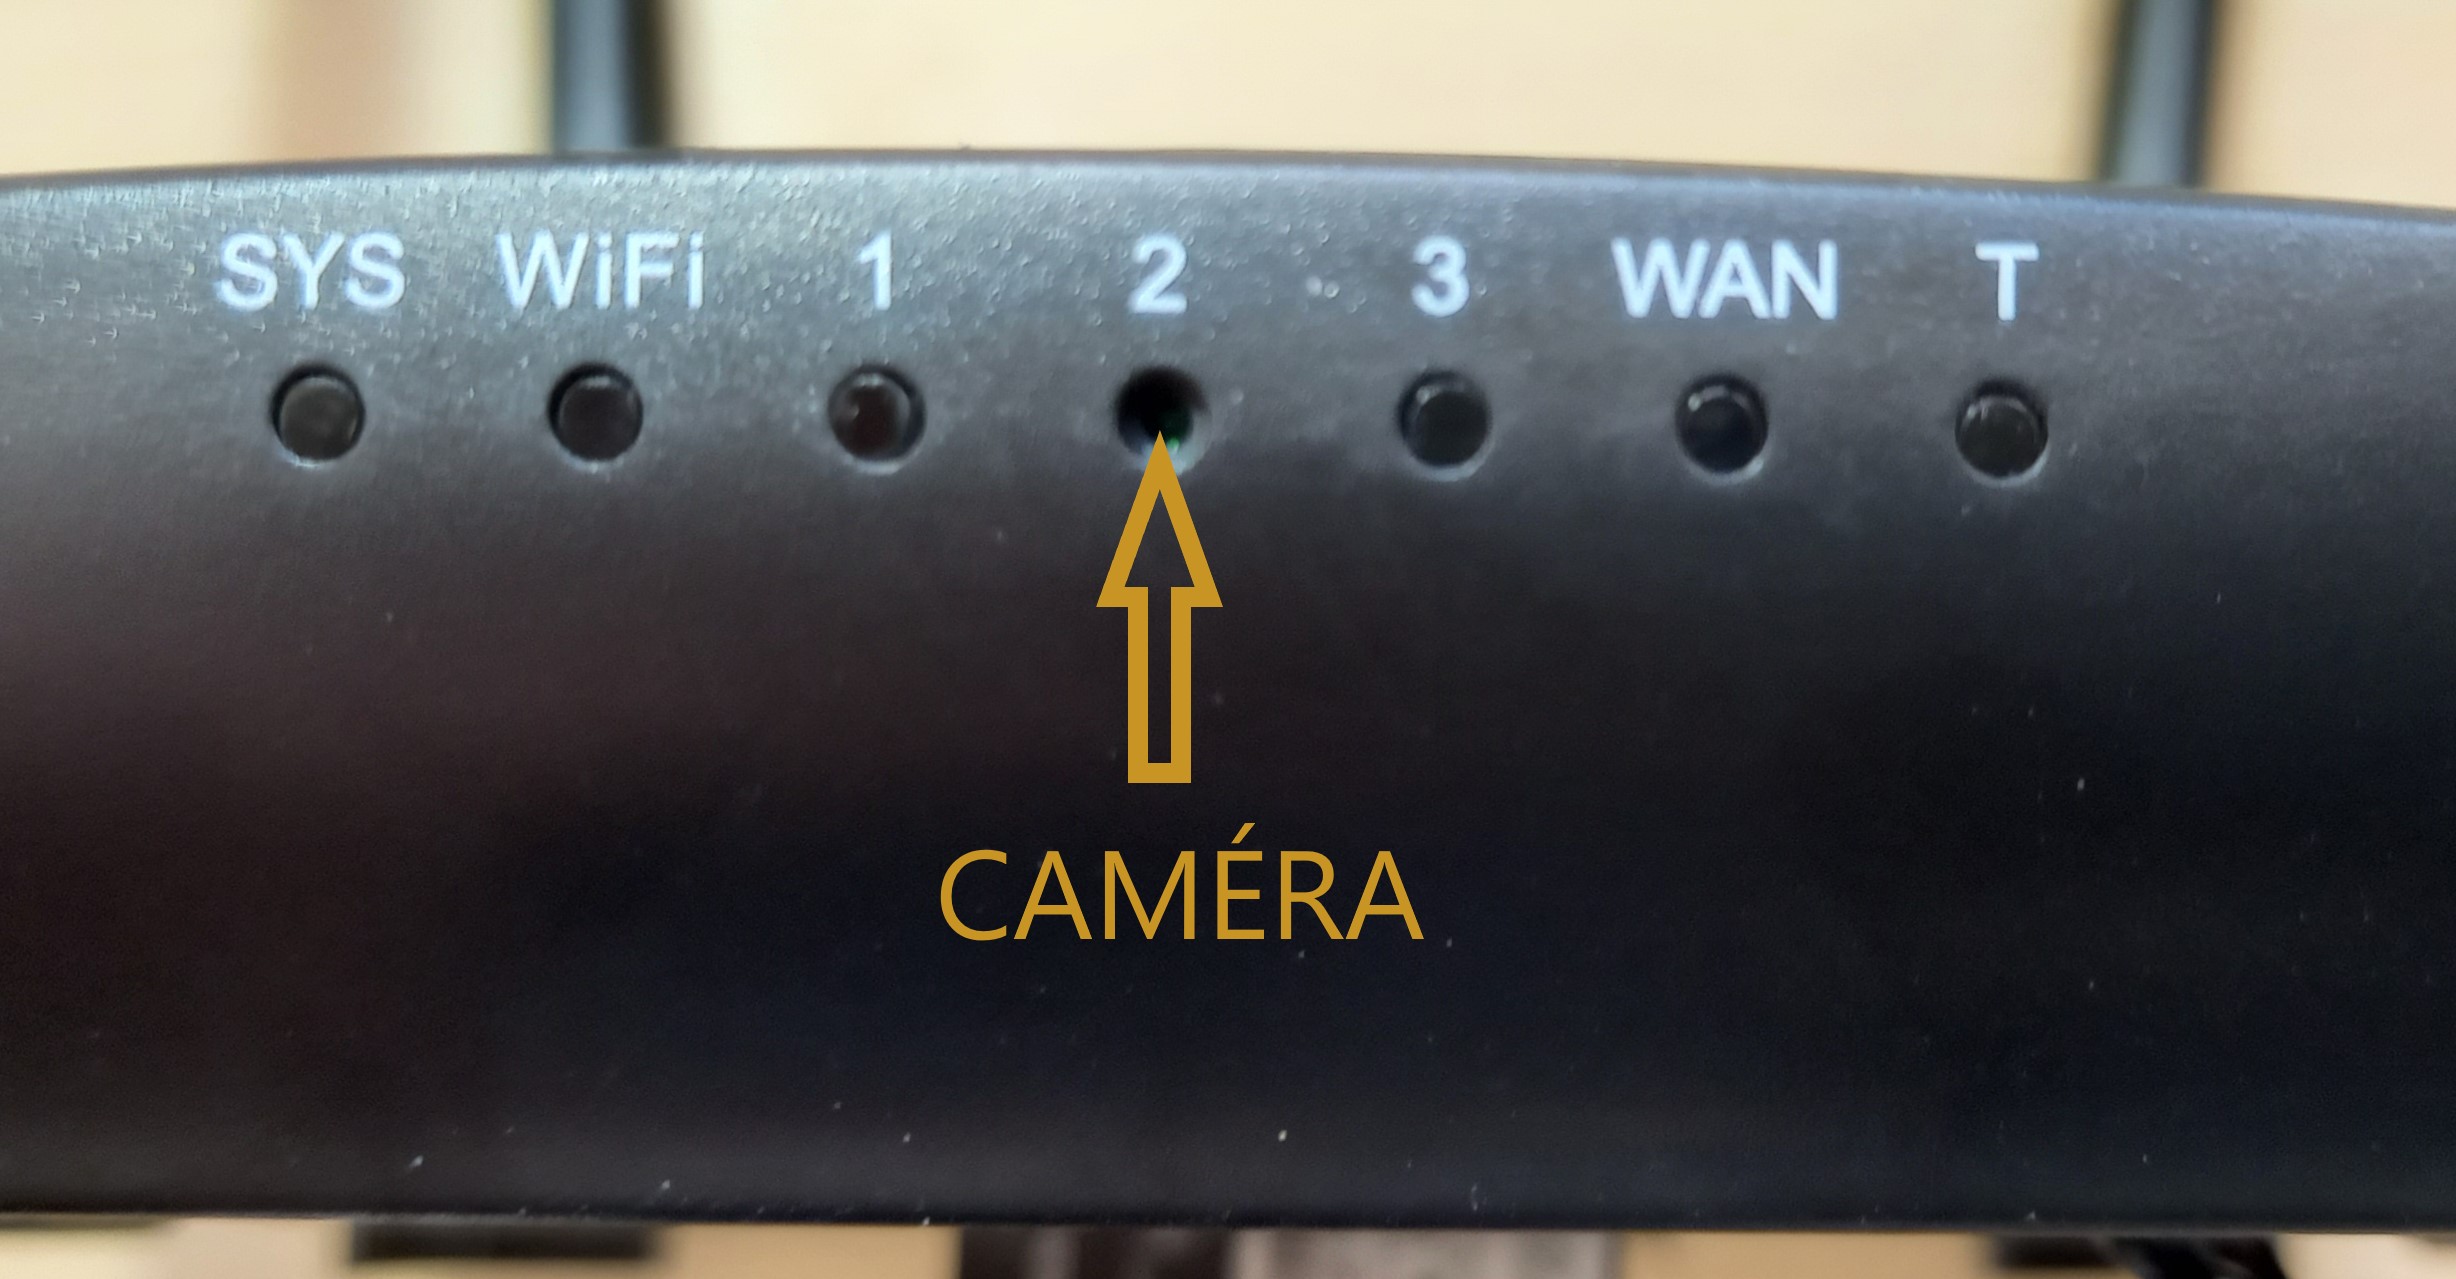 Objectif de la caméra espion dissimulée dans un routeur WiFi